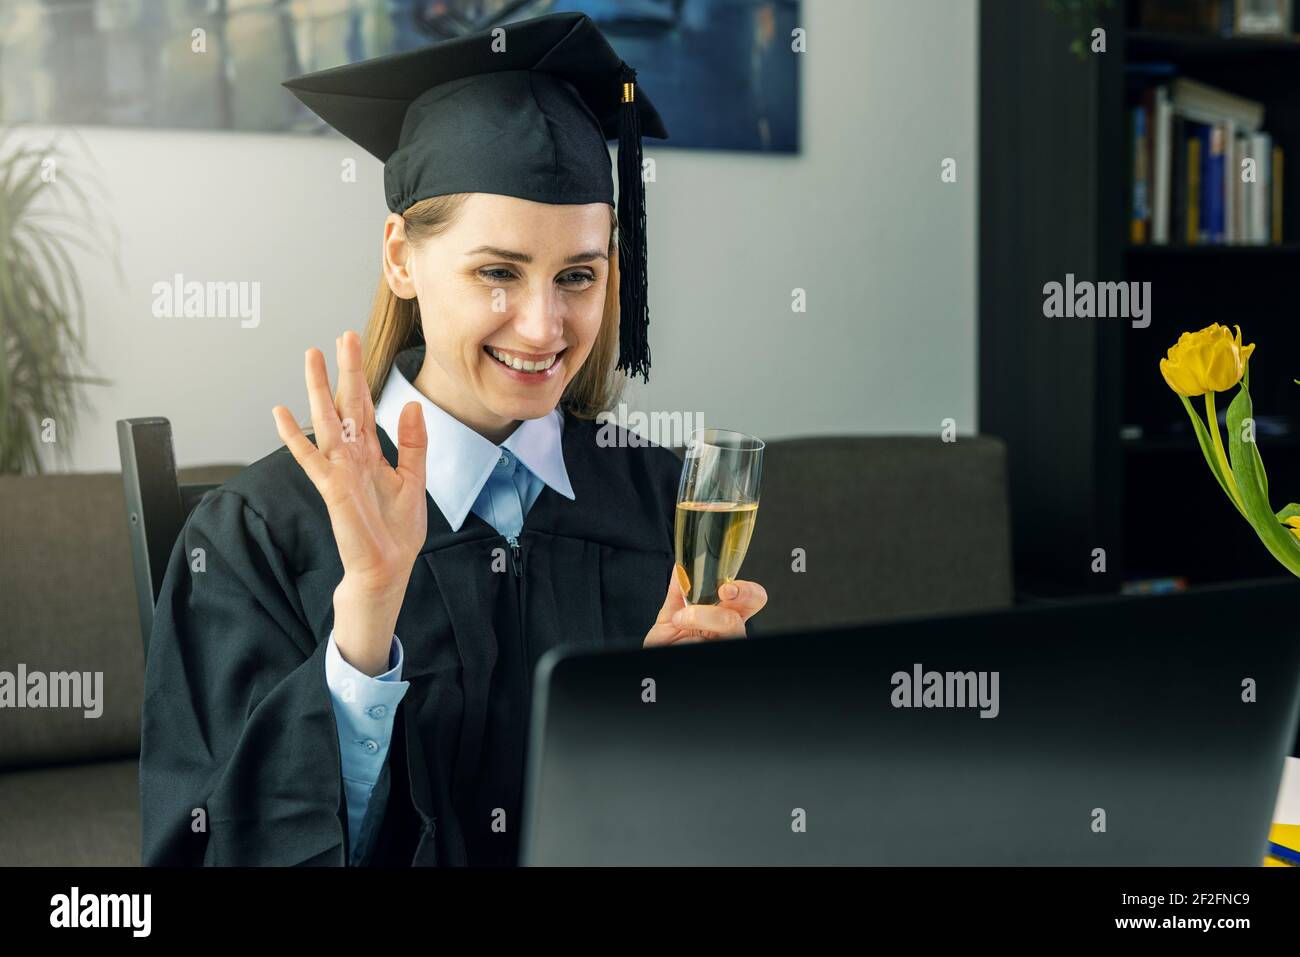 fête sociale de remise de diplômes de distanciation - femme diplômé portant robe et célébrez votre baccalauréat en ligne avec des amis de l'université à la maison Banque D'Images